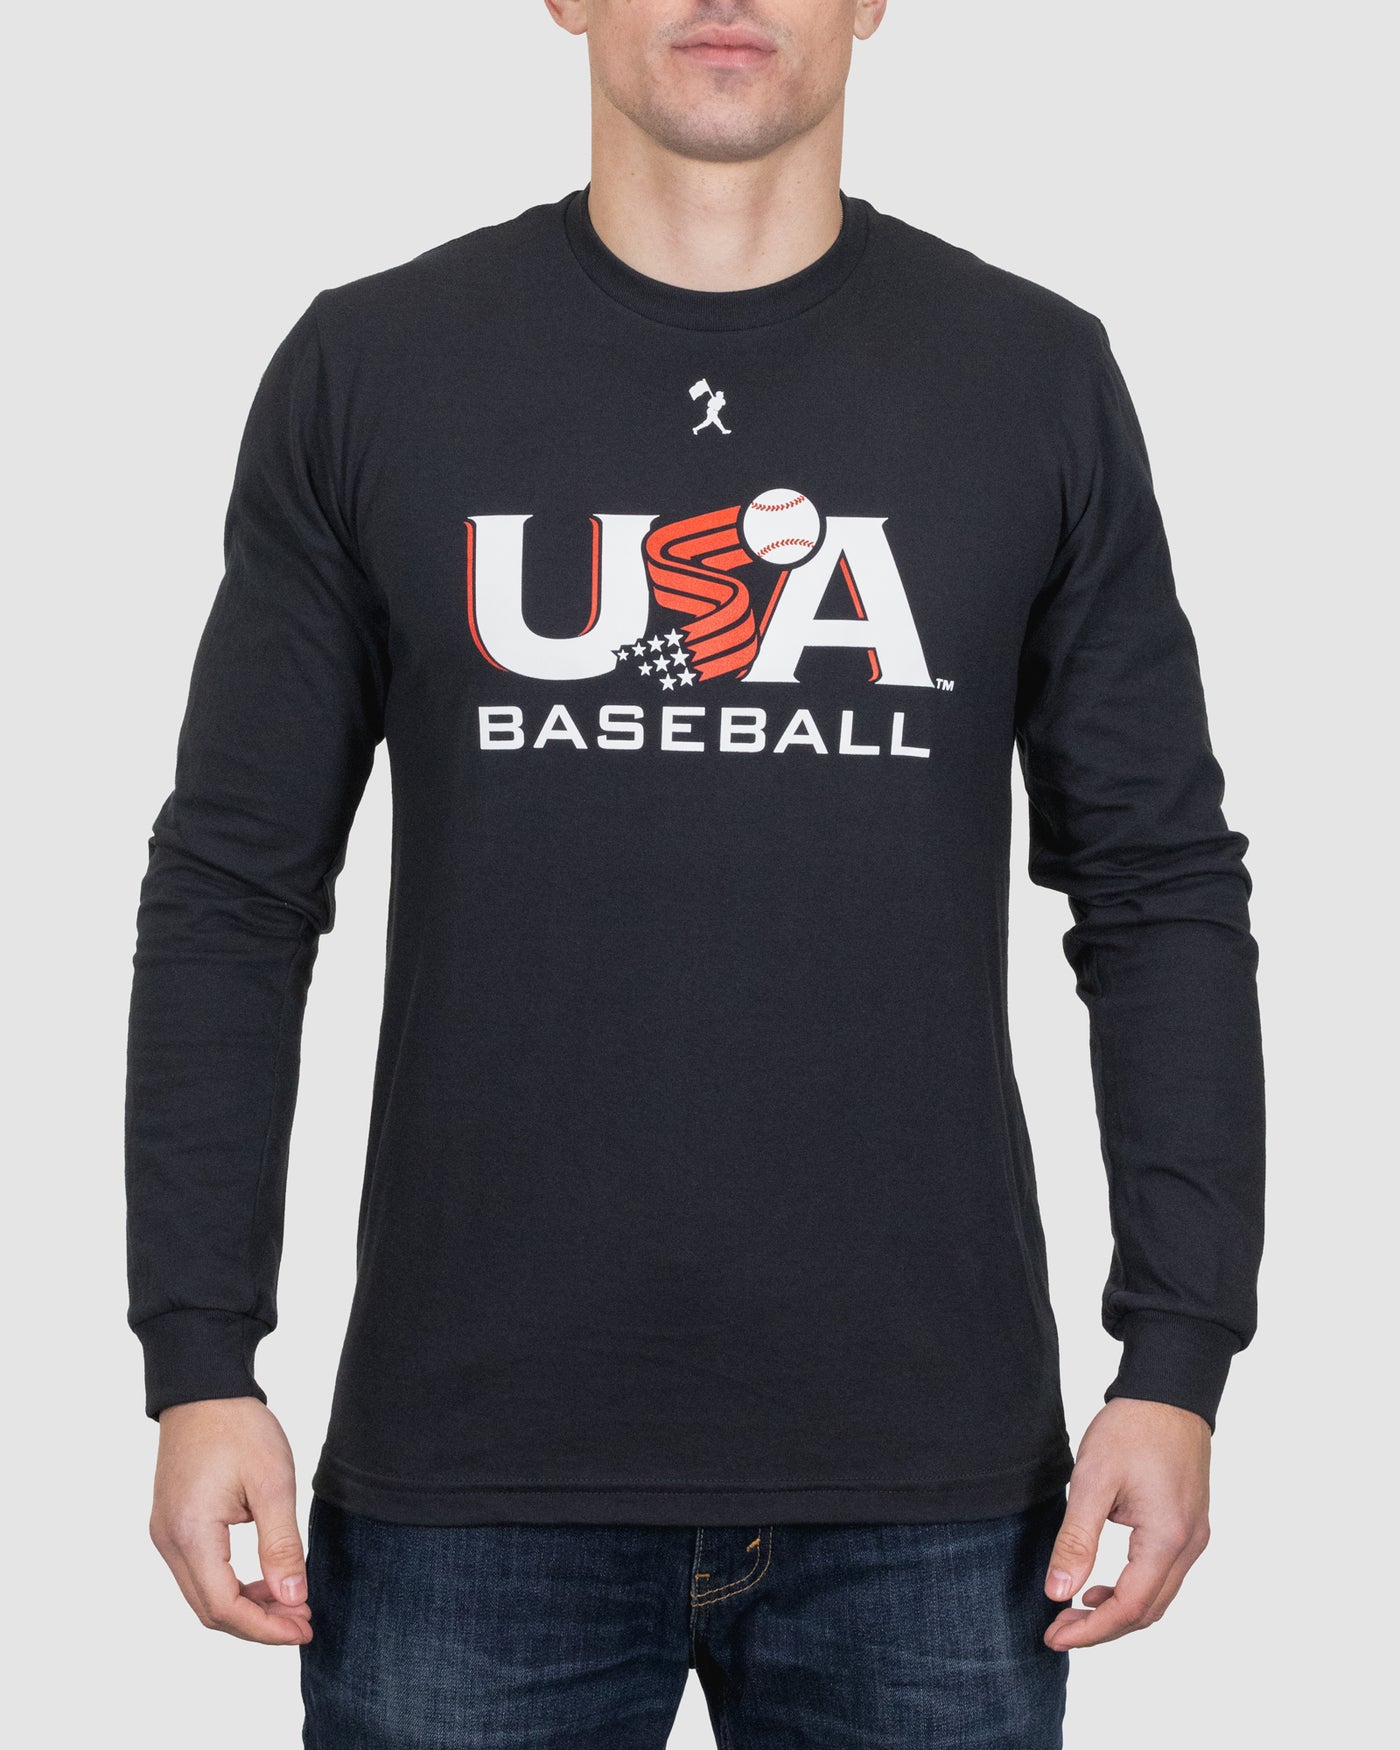 Baseballism x USA Baseball Long Sleeve - Black